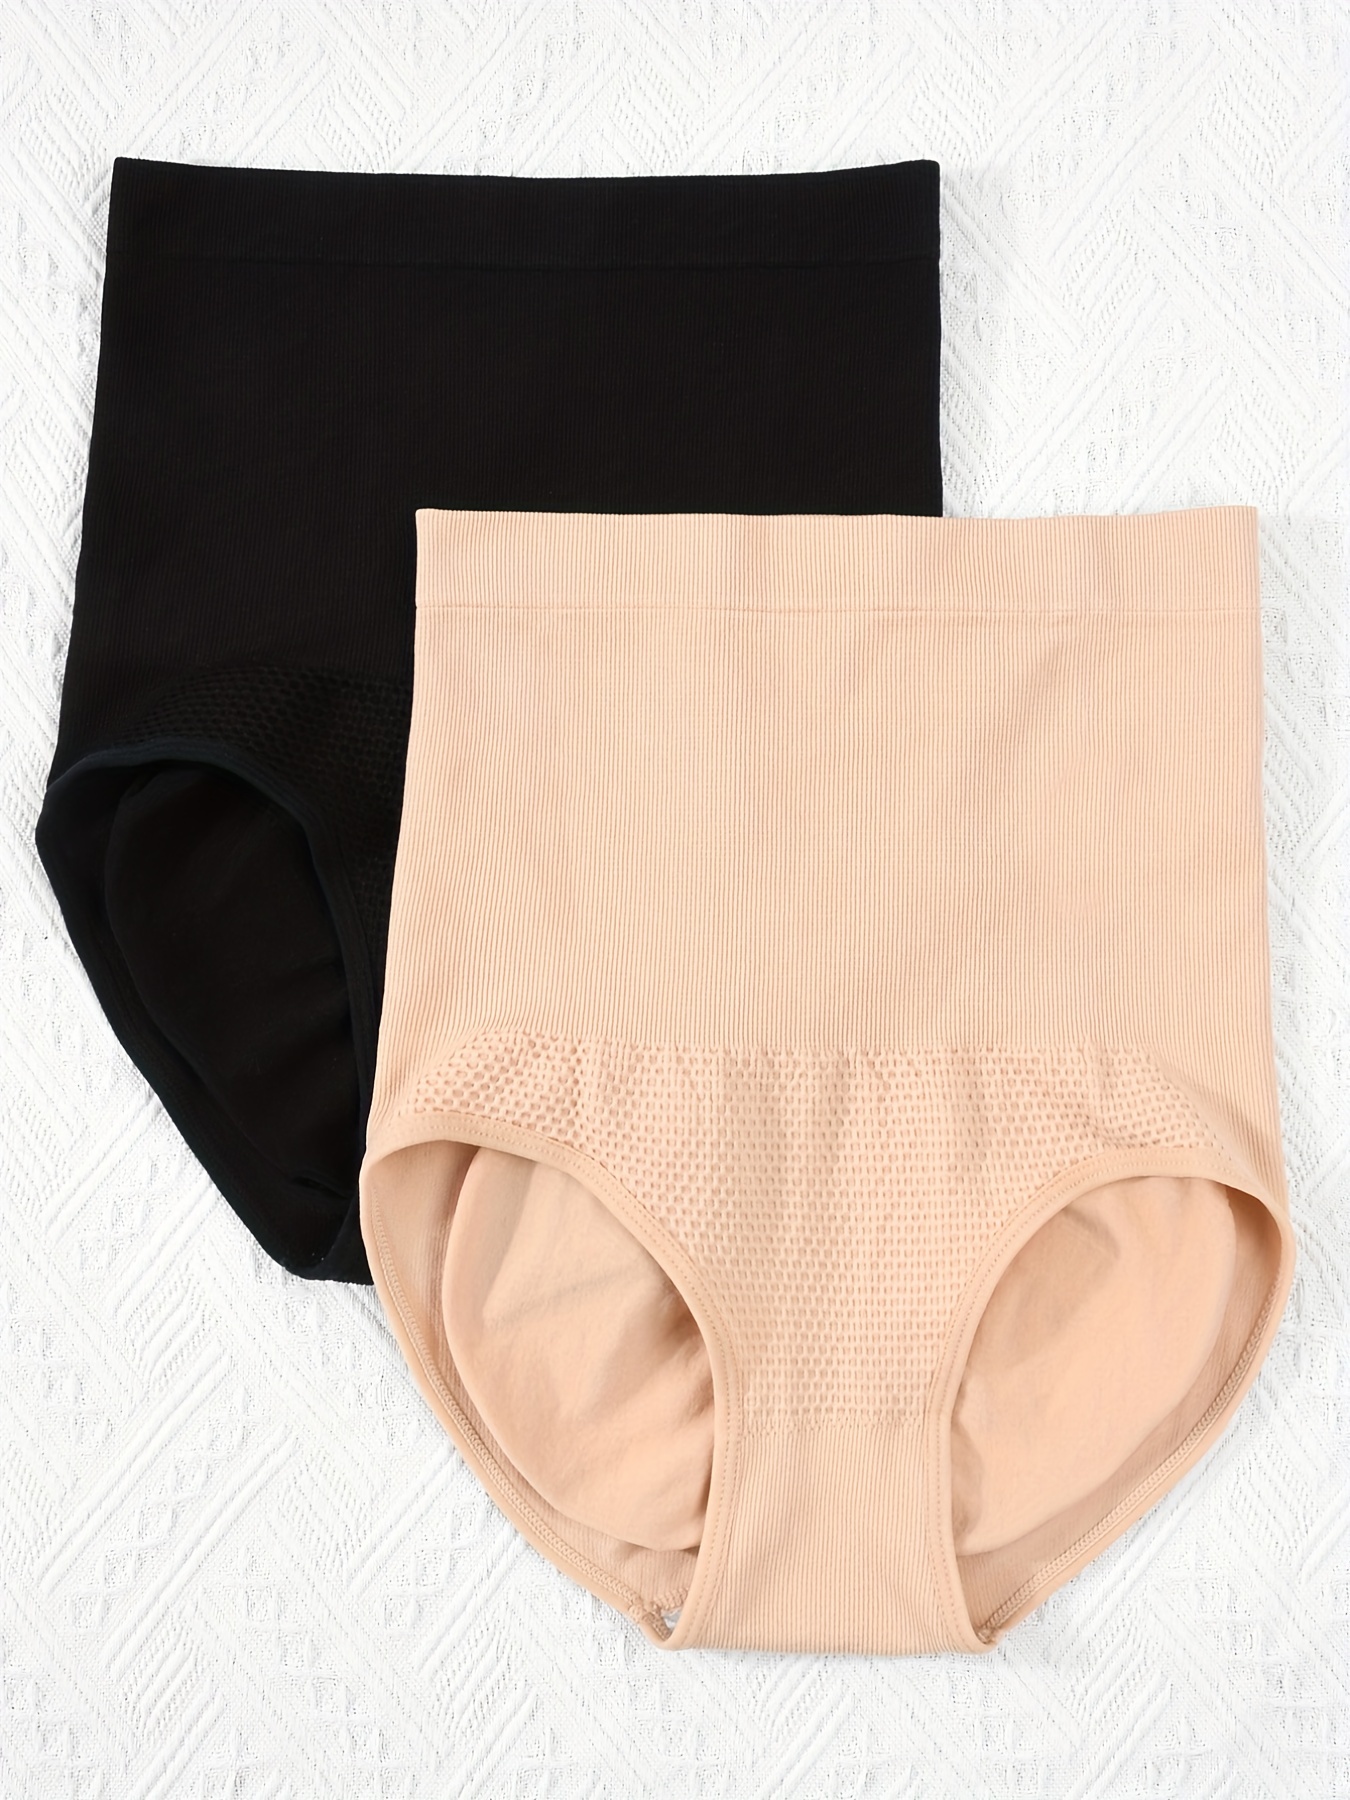 COMFREE High Waist Shapewear Panties Briefs Underwear for Women